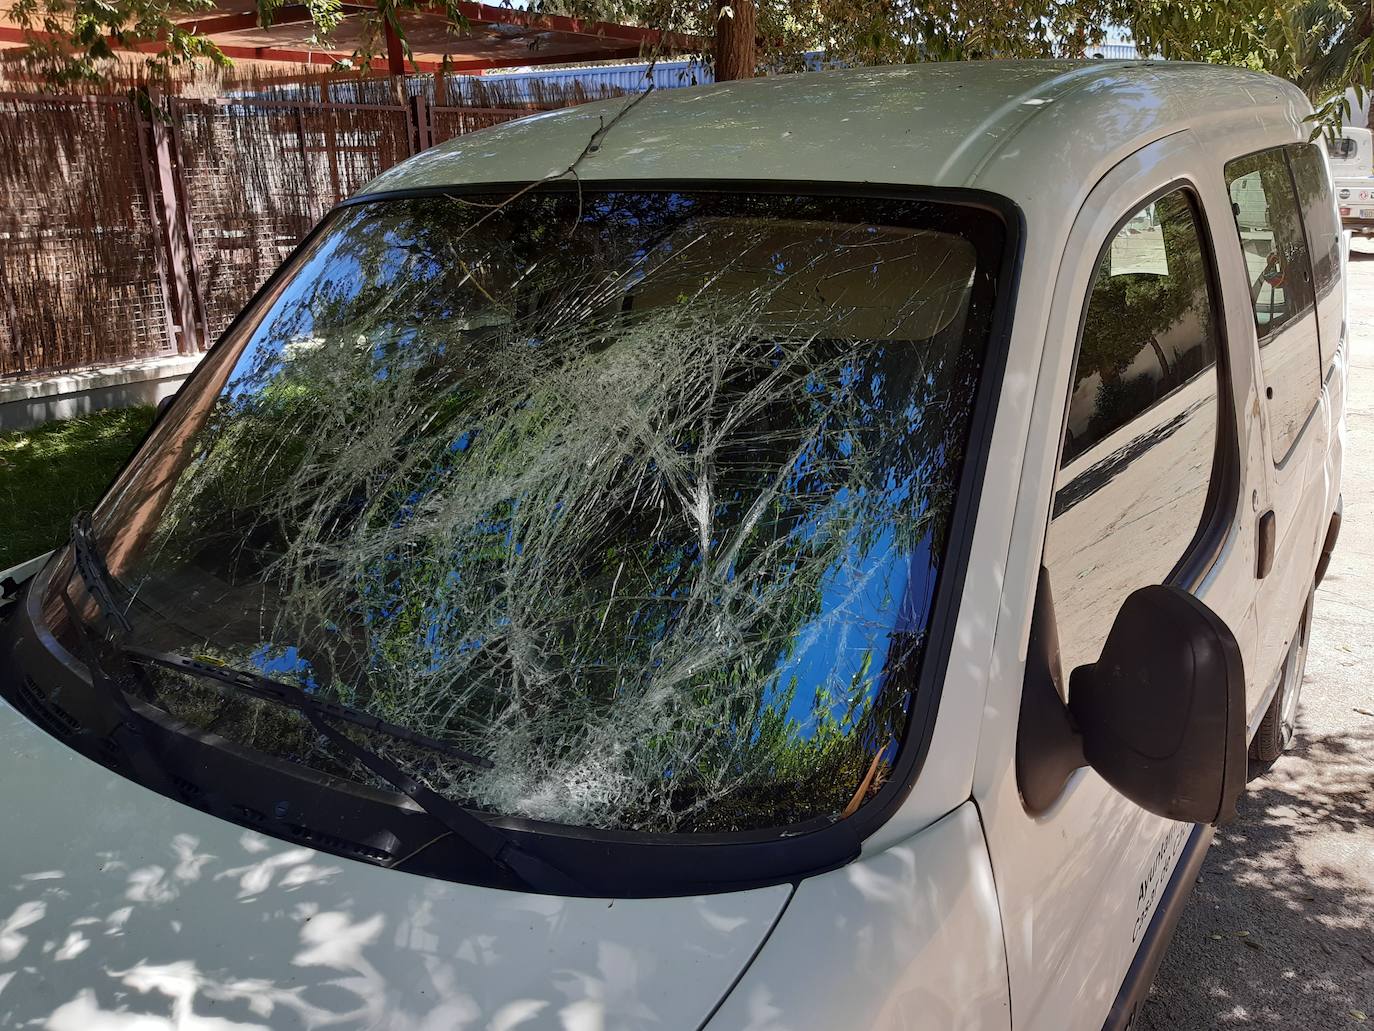 El impacto del vehículo contra el árbol provocó varios desperfectos en el mismo. /L.C.G.